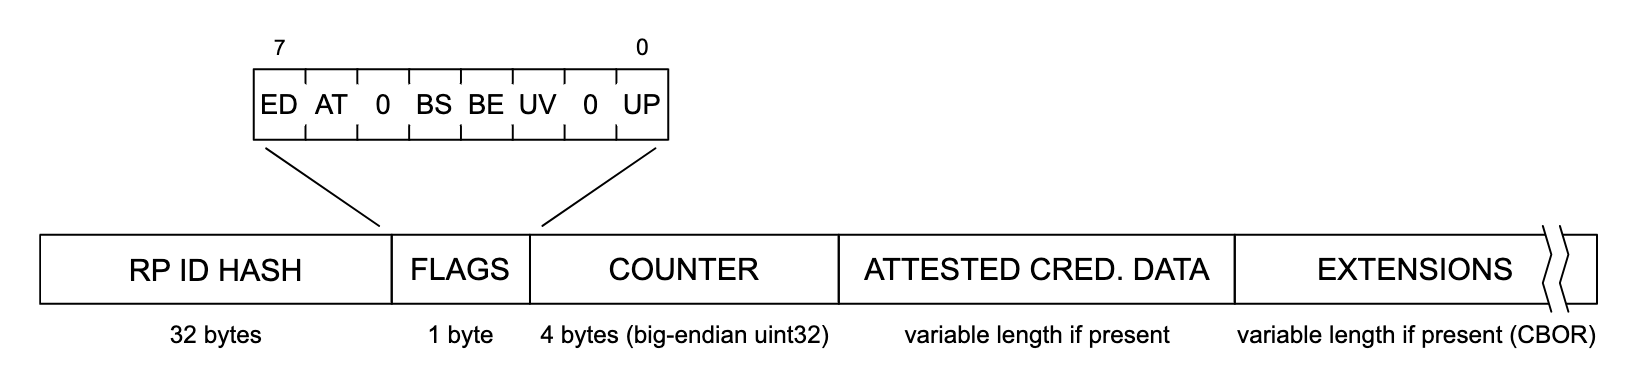 Représentation de la structure des données d&#39;authentification. De gauche à droite, chaque section de la structure de données indique &quot;RP ID HASH&quot; (32 octets), &quot;FLAGS&quot; (1 octet), &quot;COUNTER&quot; (4 octets, big-endian uint32), &quot;ATTESTE CRED&quot;. DATA&quot; (longueur variable si disponible) et &quot;EXTENSIONS&quot; (longueur variable si disponible (CBOR)). La section &quot;FLAGS&quot; est développée pour afficher une liste de drapeaux potentiels, libellés de gauche à droite: &quot;ED&quot;, &quot;AT&quot;, &quot;0&quot;, &quot;BS&quot;, &quot;BE&quot;, &quot;UV&quot;, &quot;0&quot; et &quot;UP&quot;.